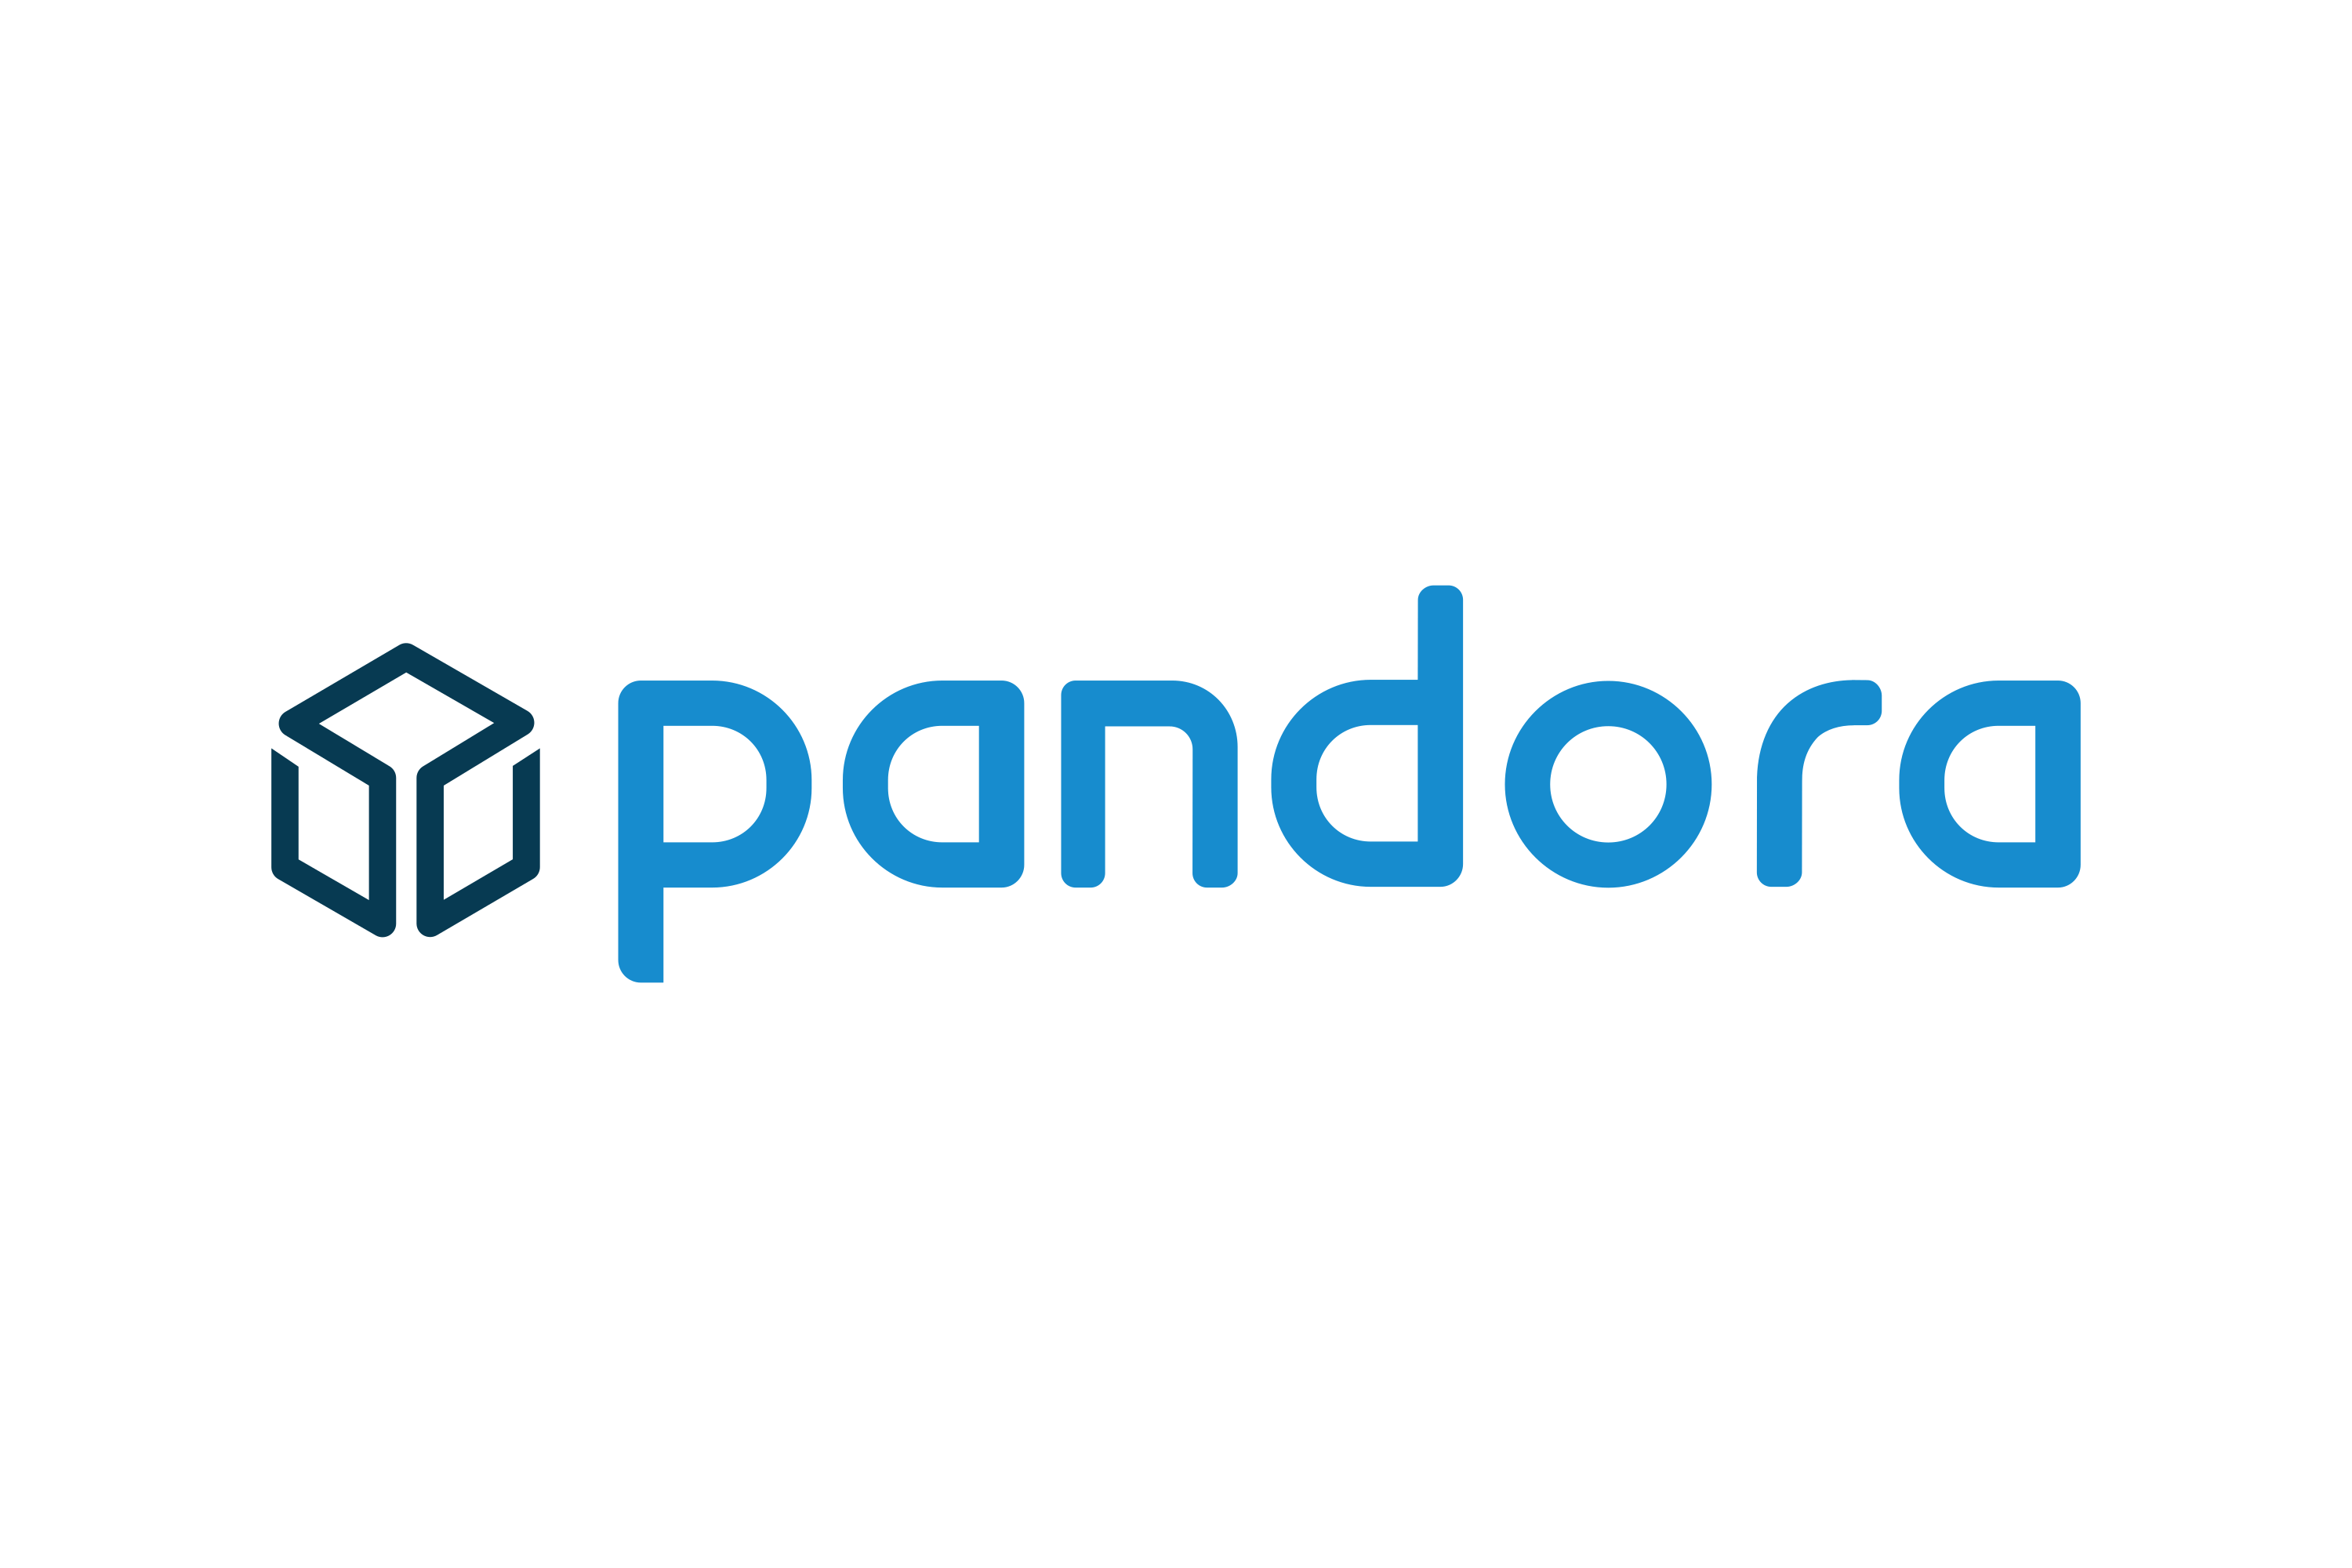 Download Pandora Logo in SVG Vector or PNG File Format - Logo.wine